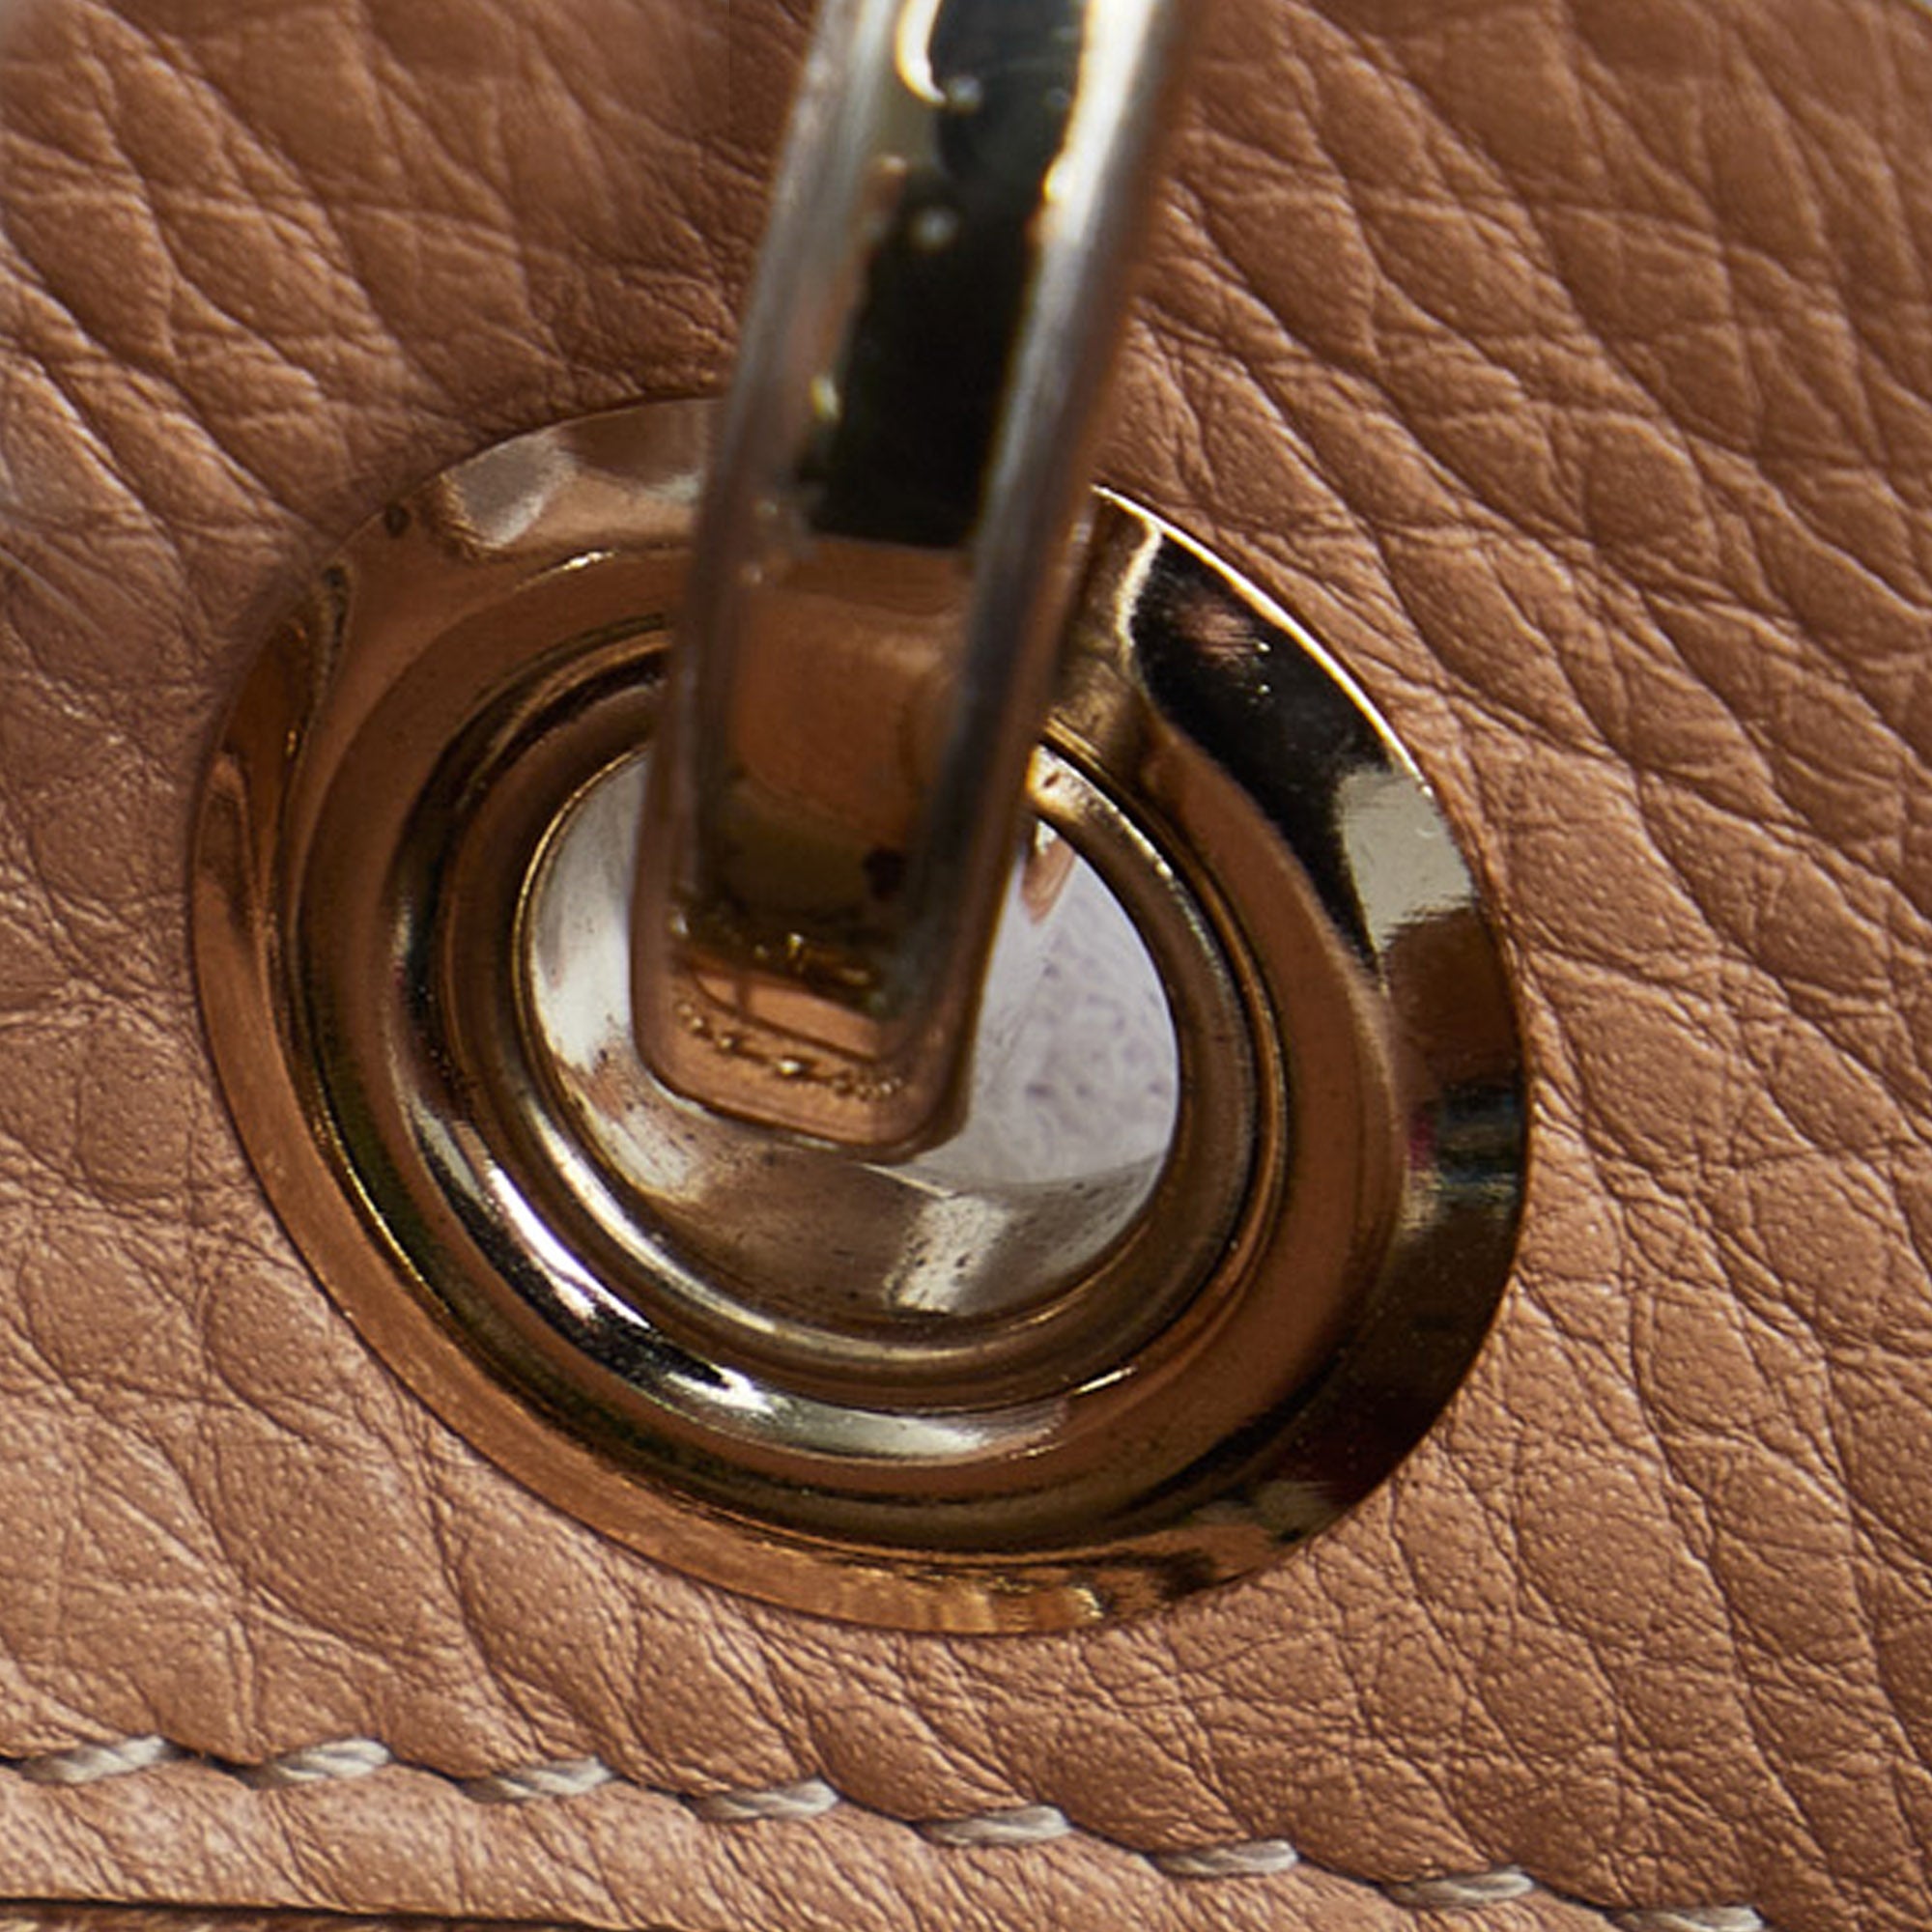 Luxury Handbags Under $1000  Episode 4: Mansur Gavriel Mini